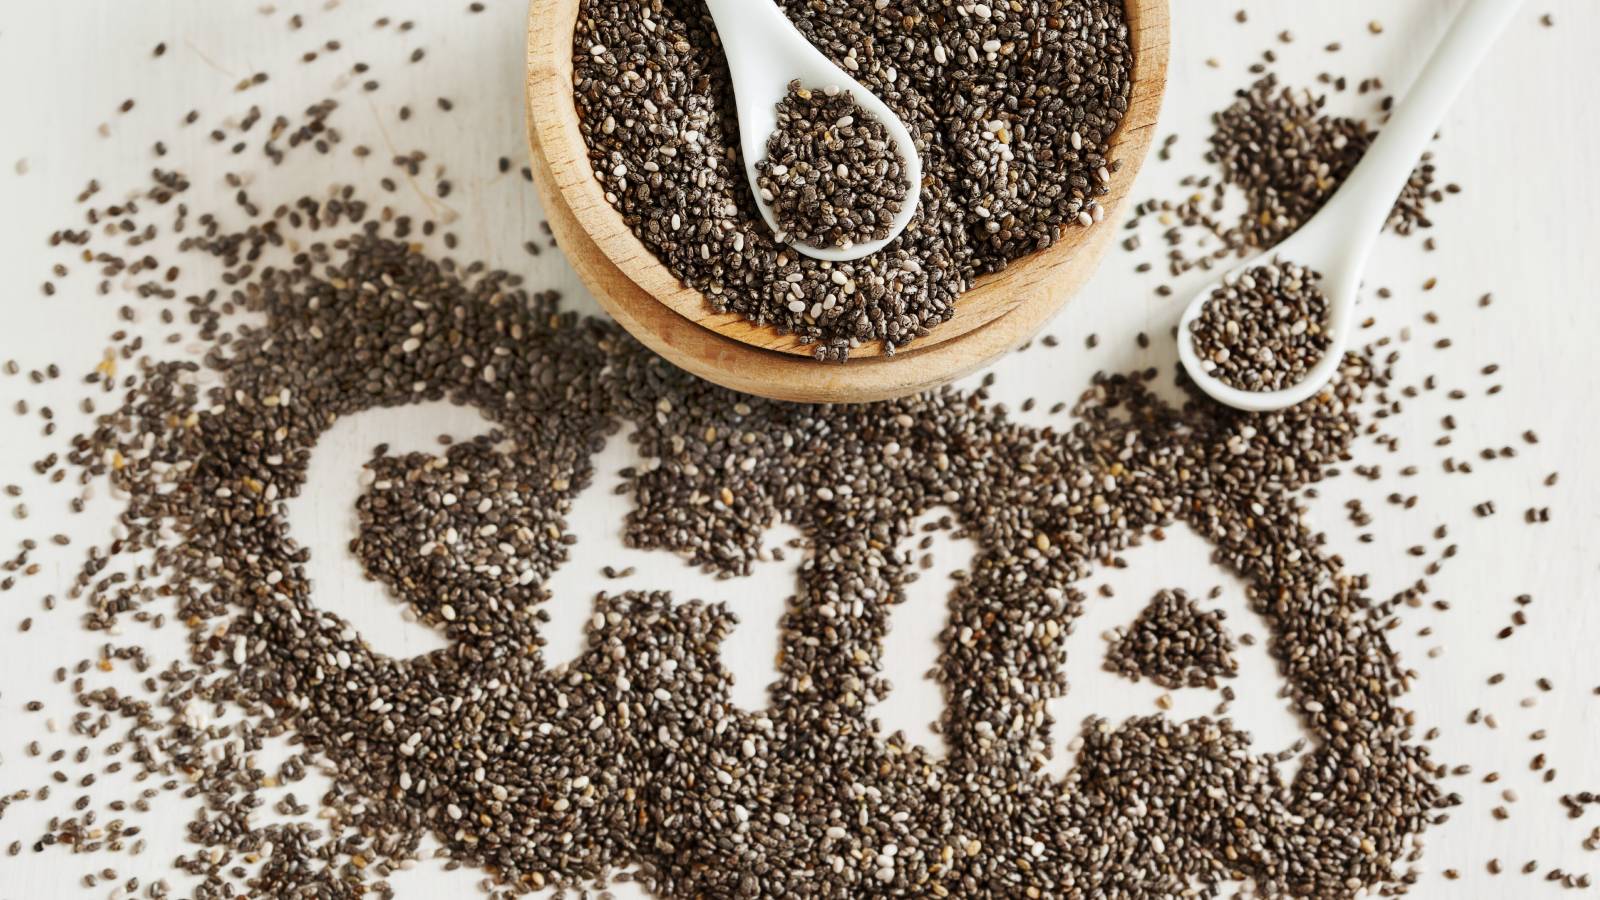 know how chia seeds are good for your sexual health.- आपकी सेक्स लाइफ में भी सुधार कर सकते हैं चिया के बीज, जानिए कैसे।